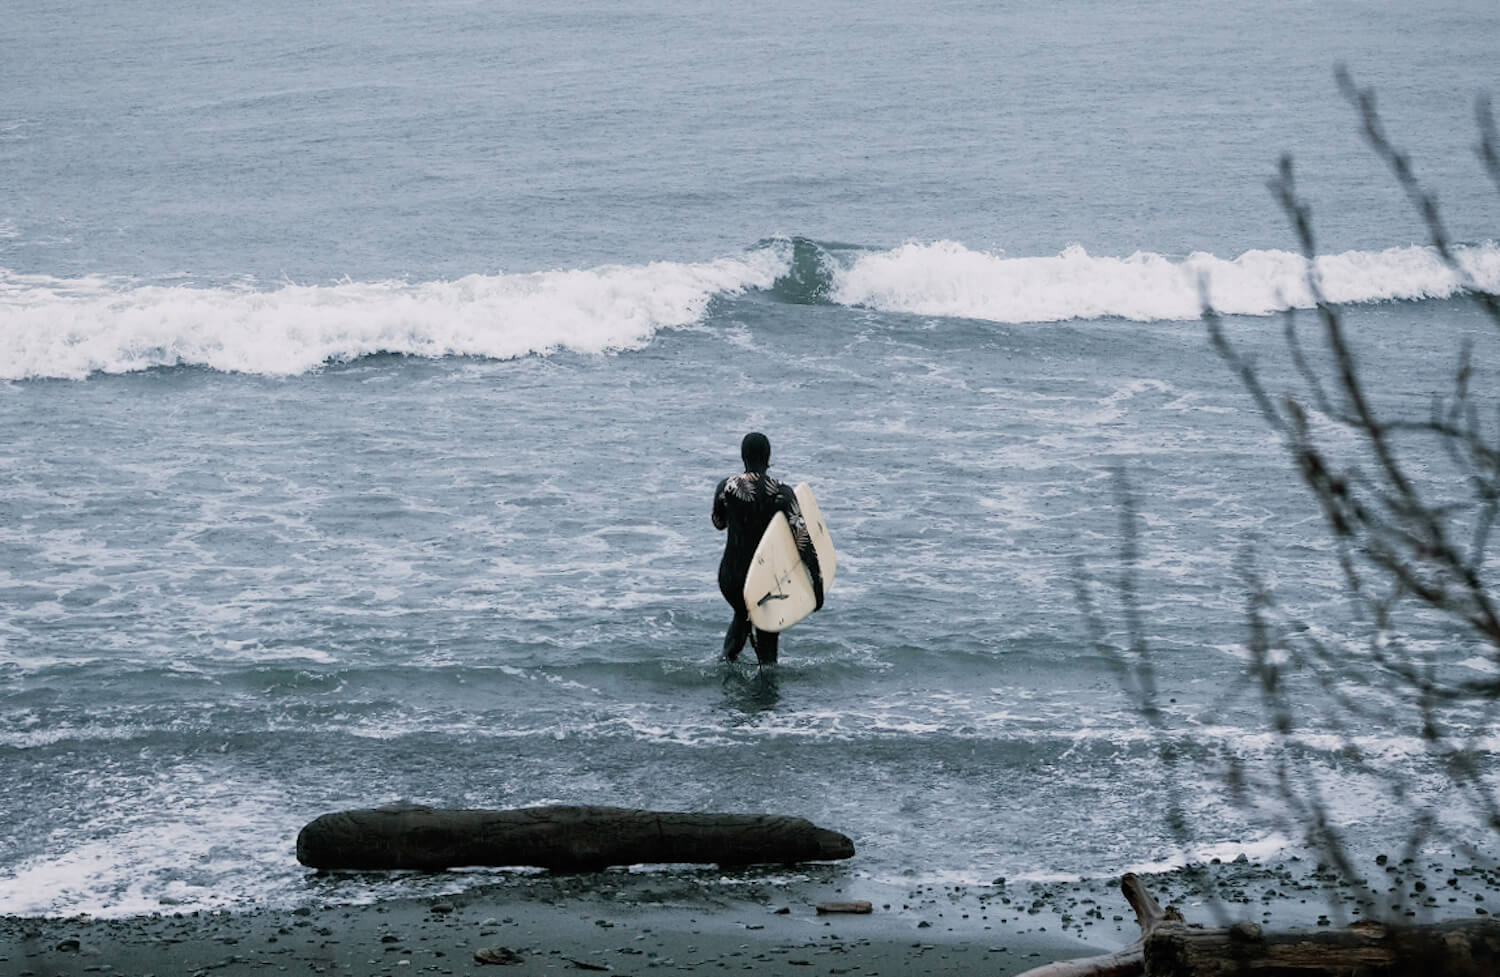 femme en surf colombie-britannique